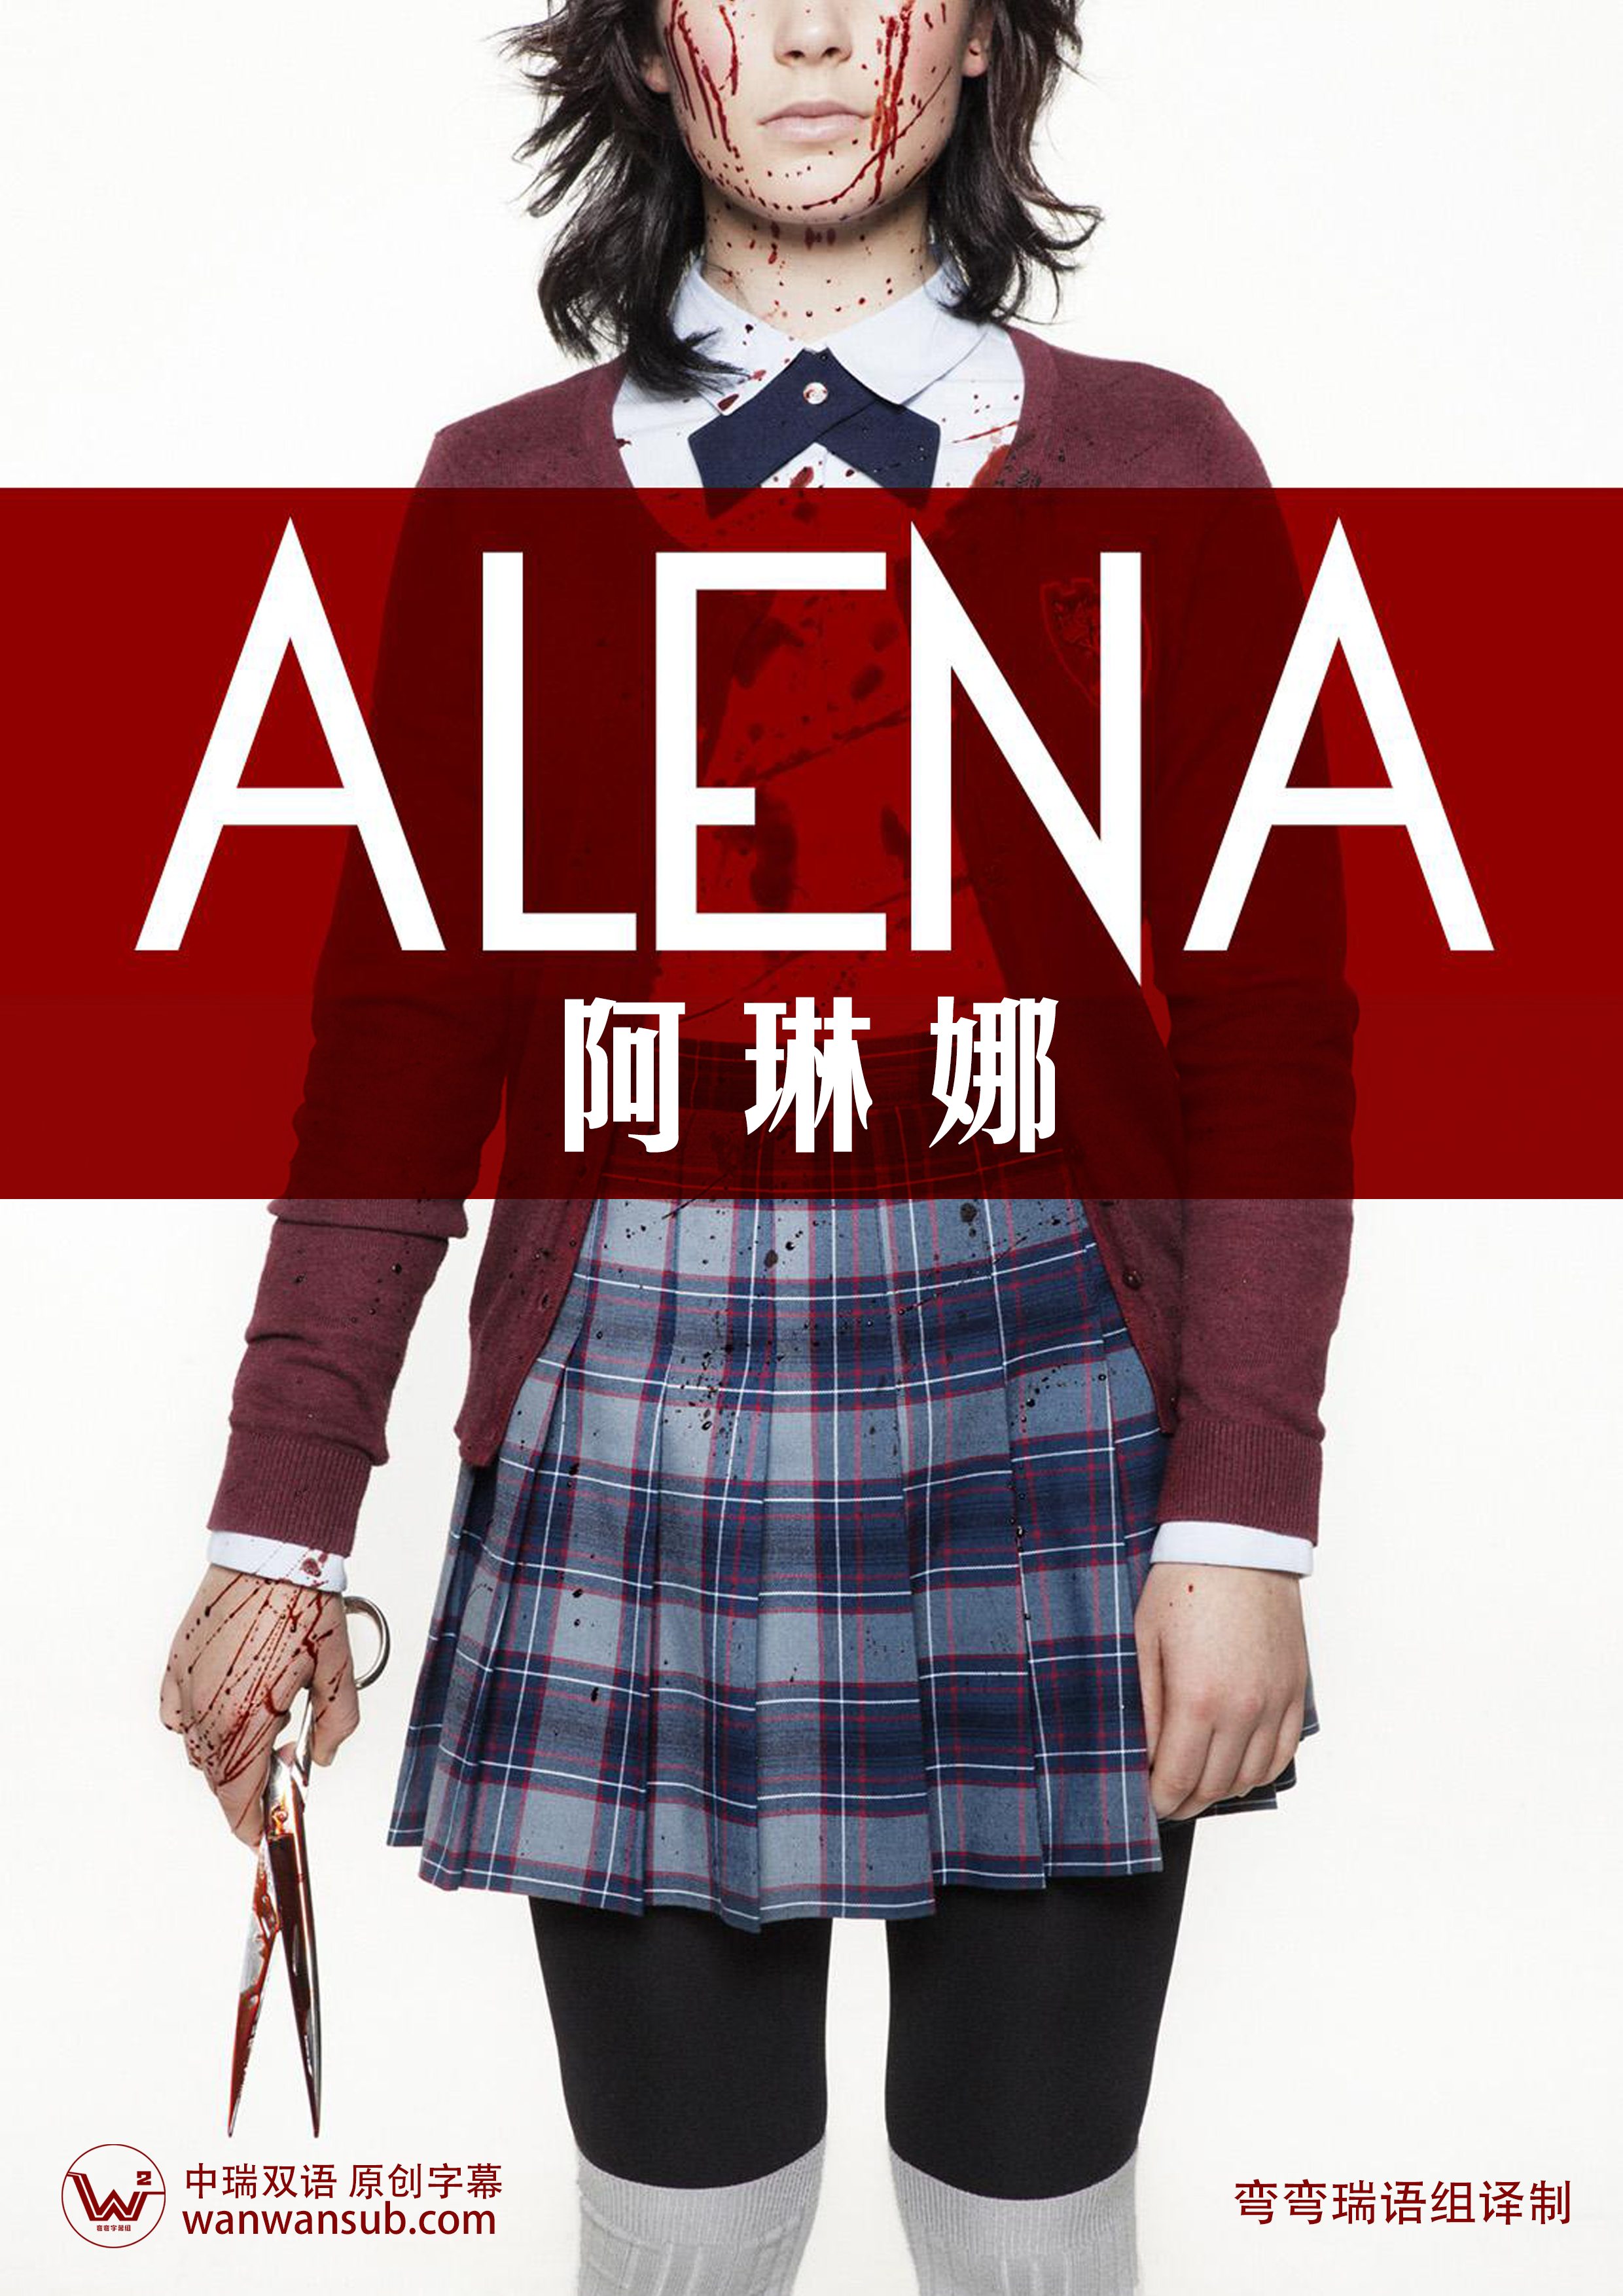 《阿琳娜 Alena》2015[瑞典语中字][WEB-MP4-1080p]